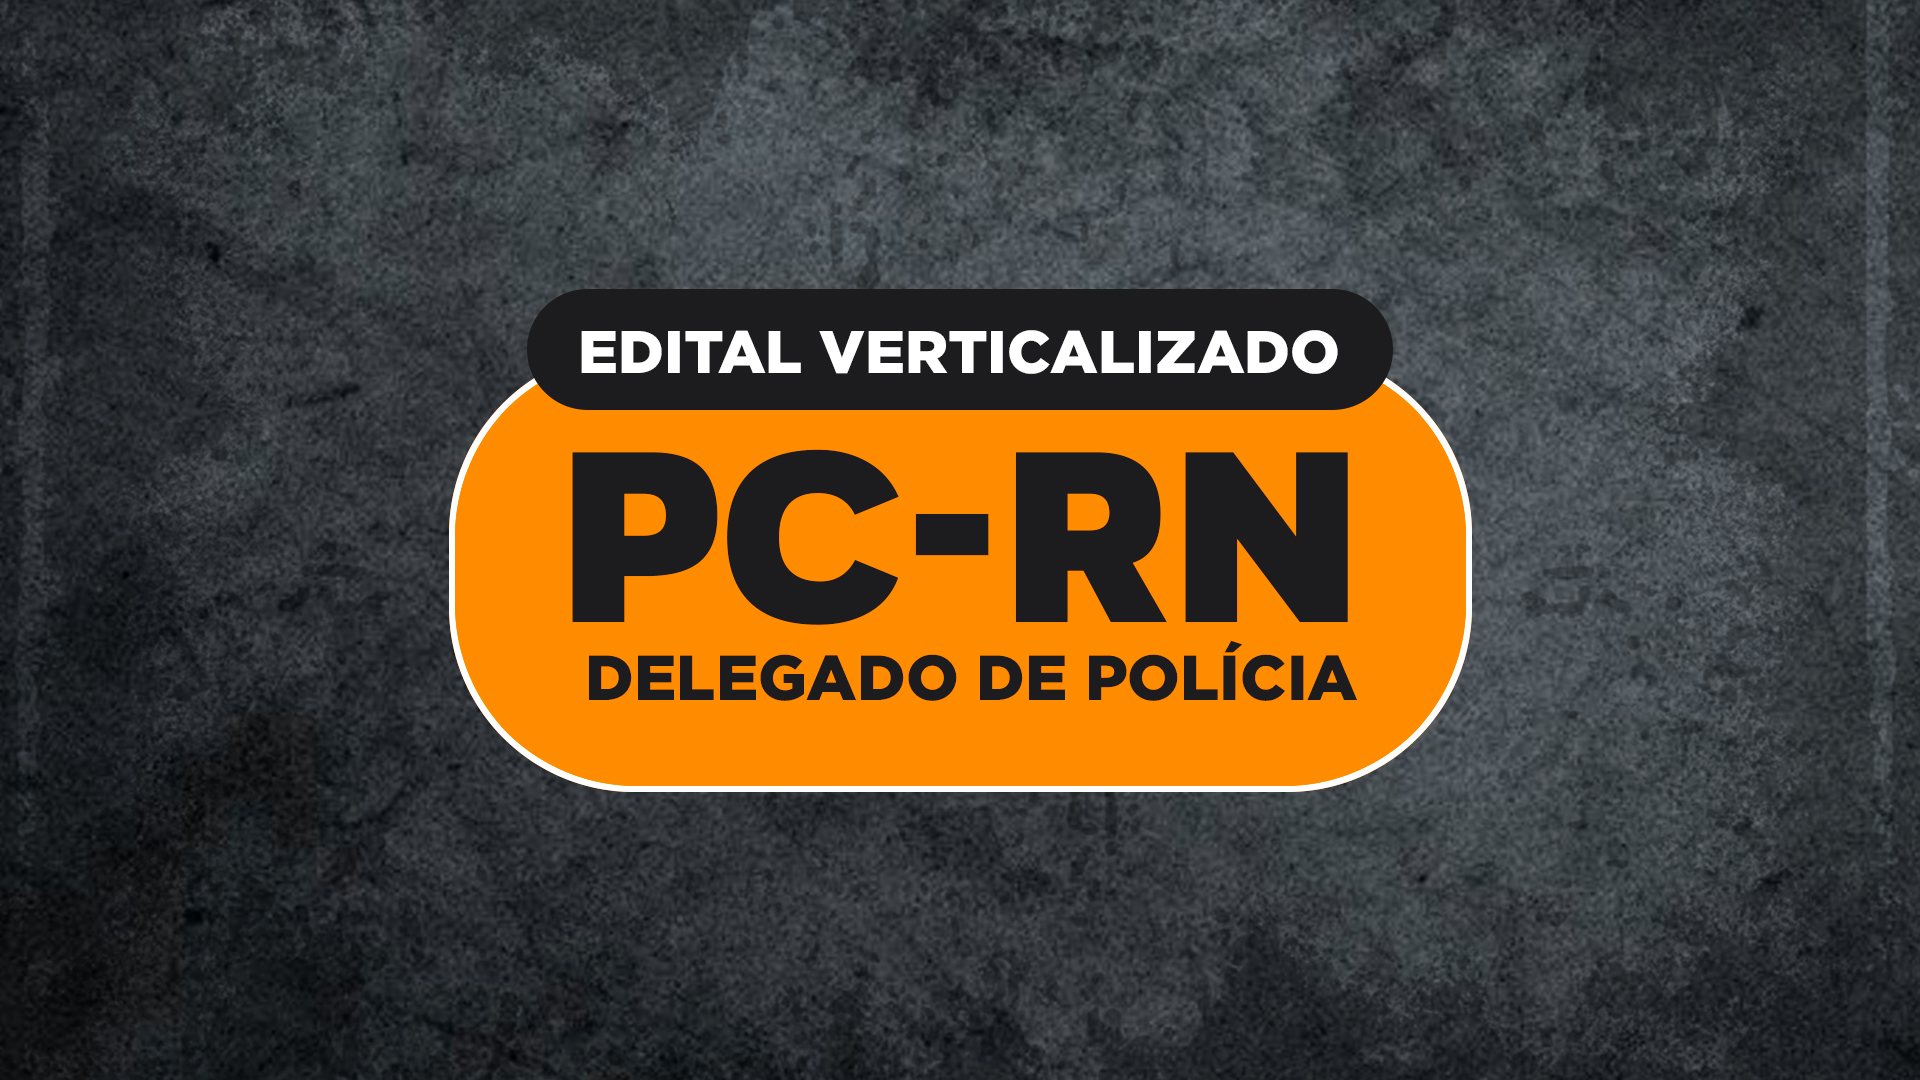 PC-RN (Delegado de Polícia 2020): Edital verticalizado